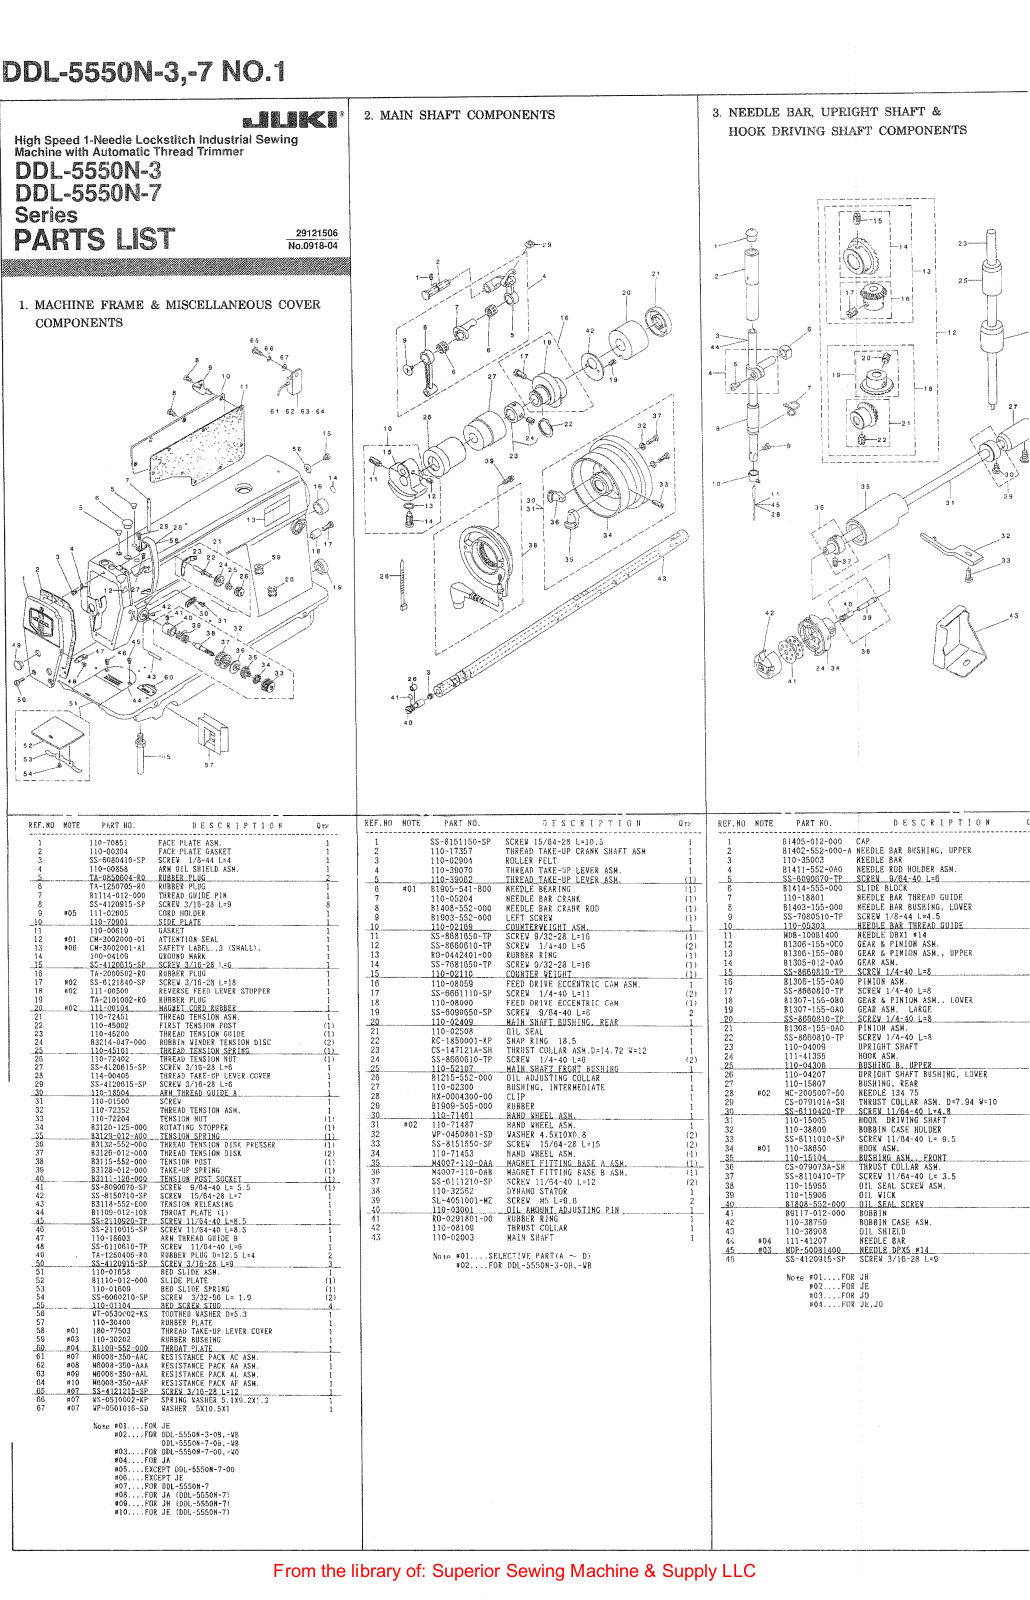 Juki DDL-5550N-3, DDL-5550N-3-7 Manual